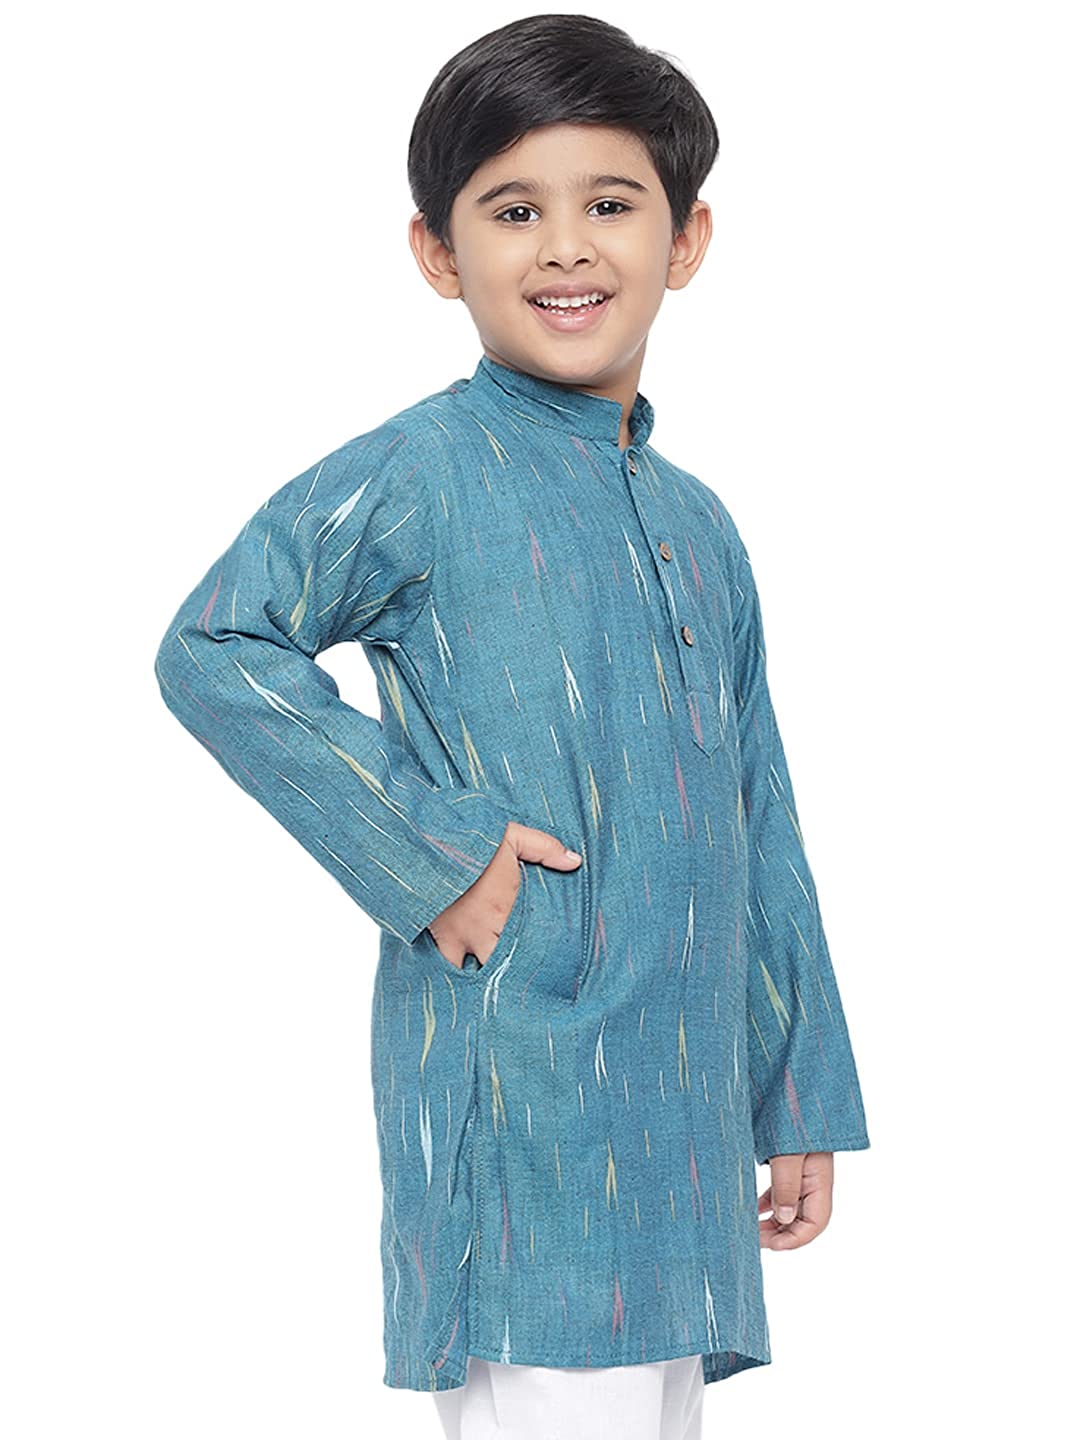 Kurta for Kids- Khadi Look in Mix Ikat Patterns South Cotton Kurta